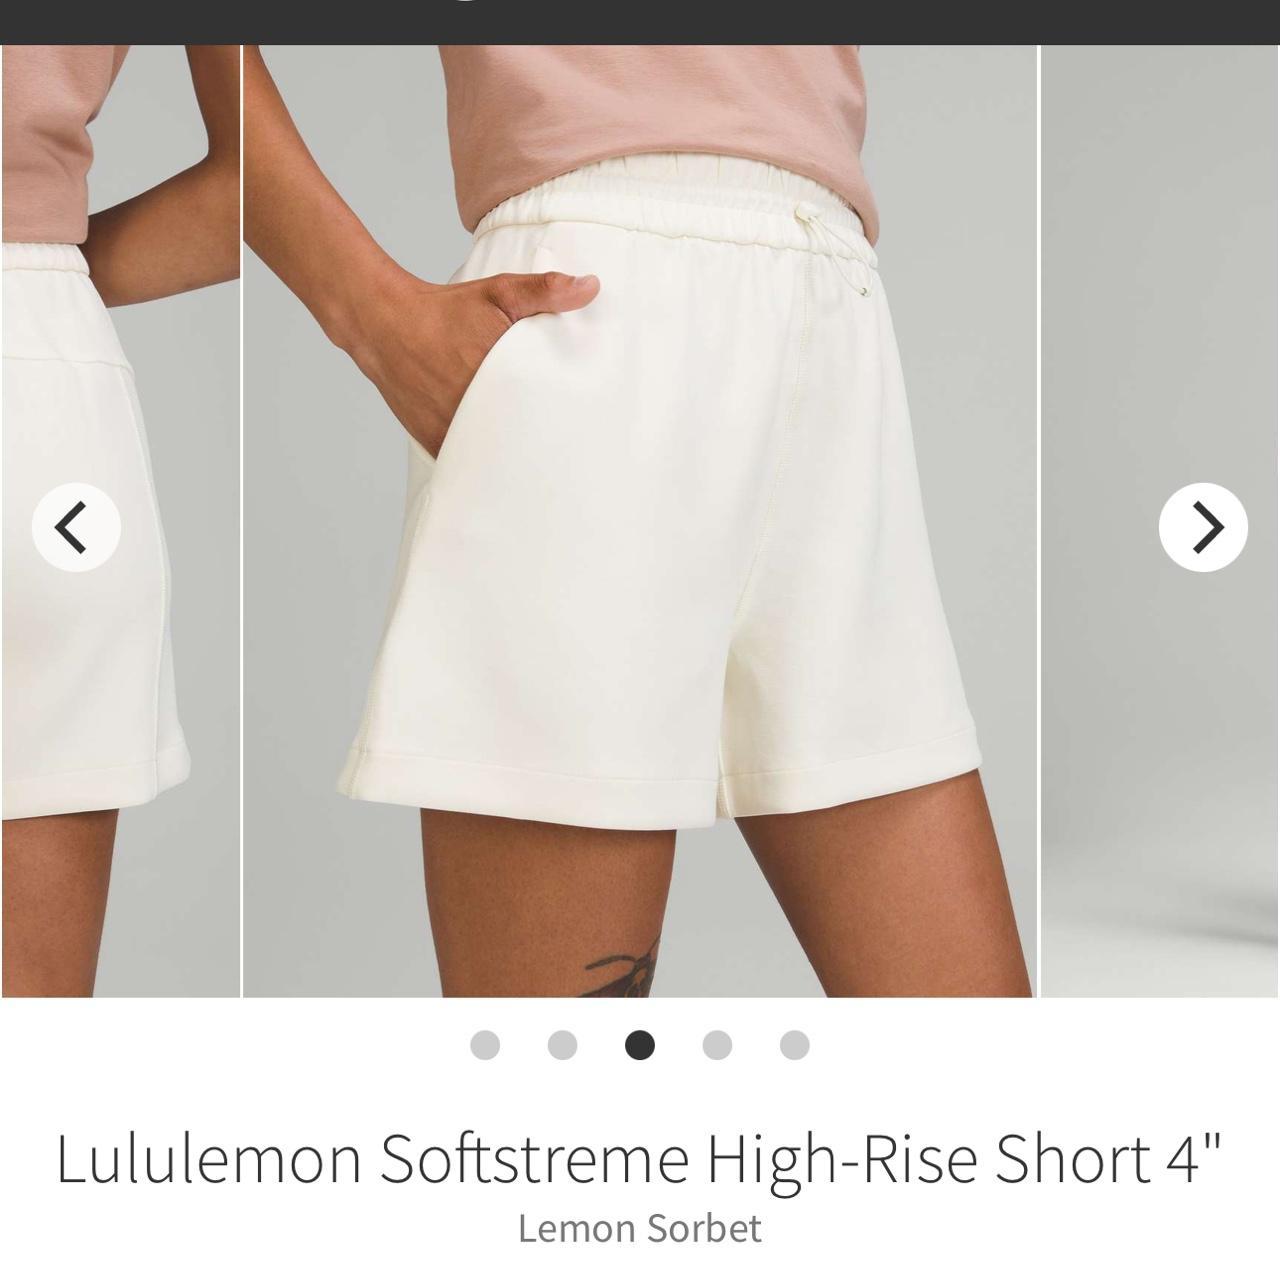 Lululemon softstreme high-rise short 4” in White - Depop